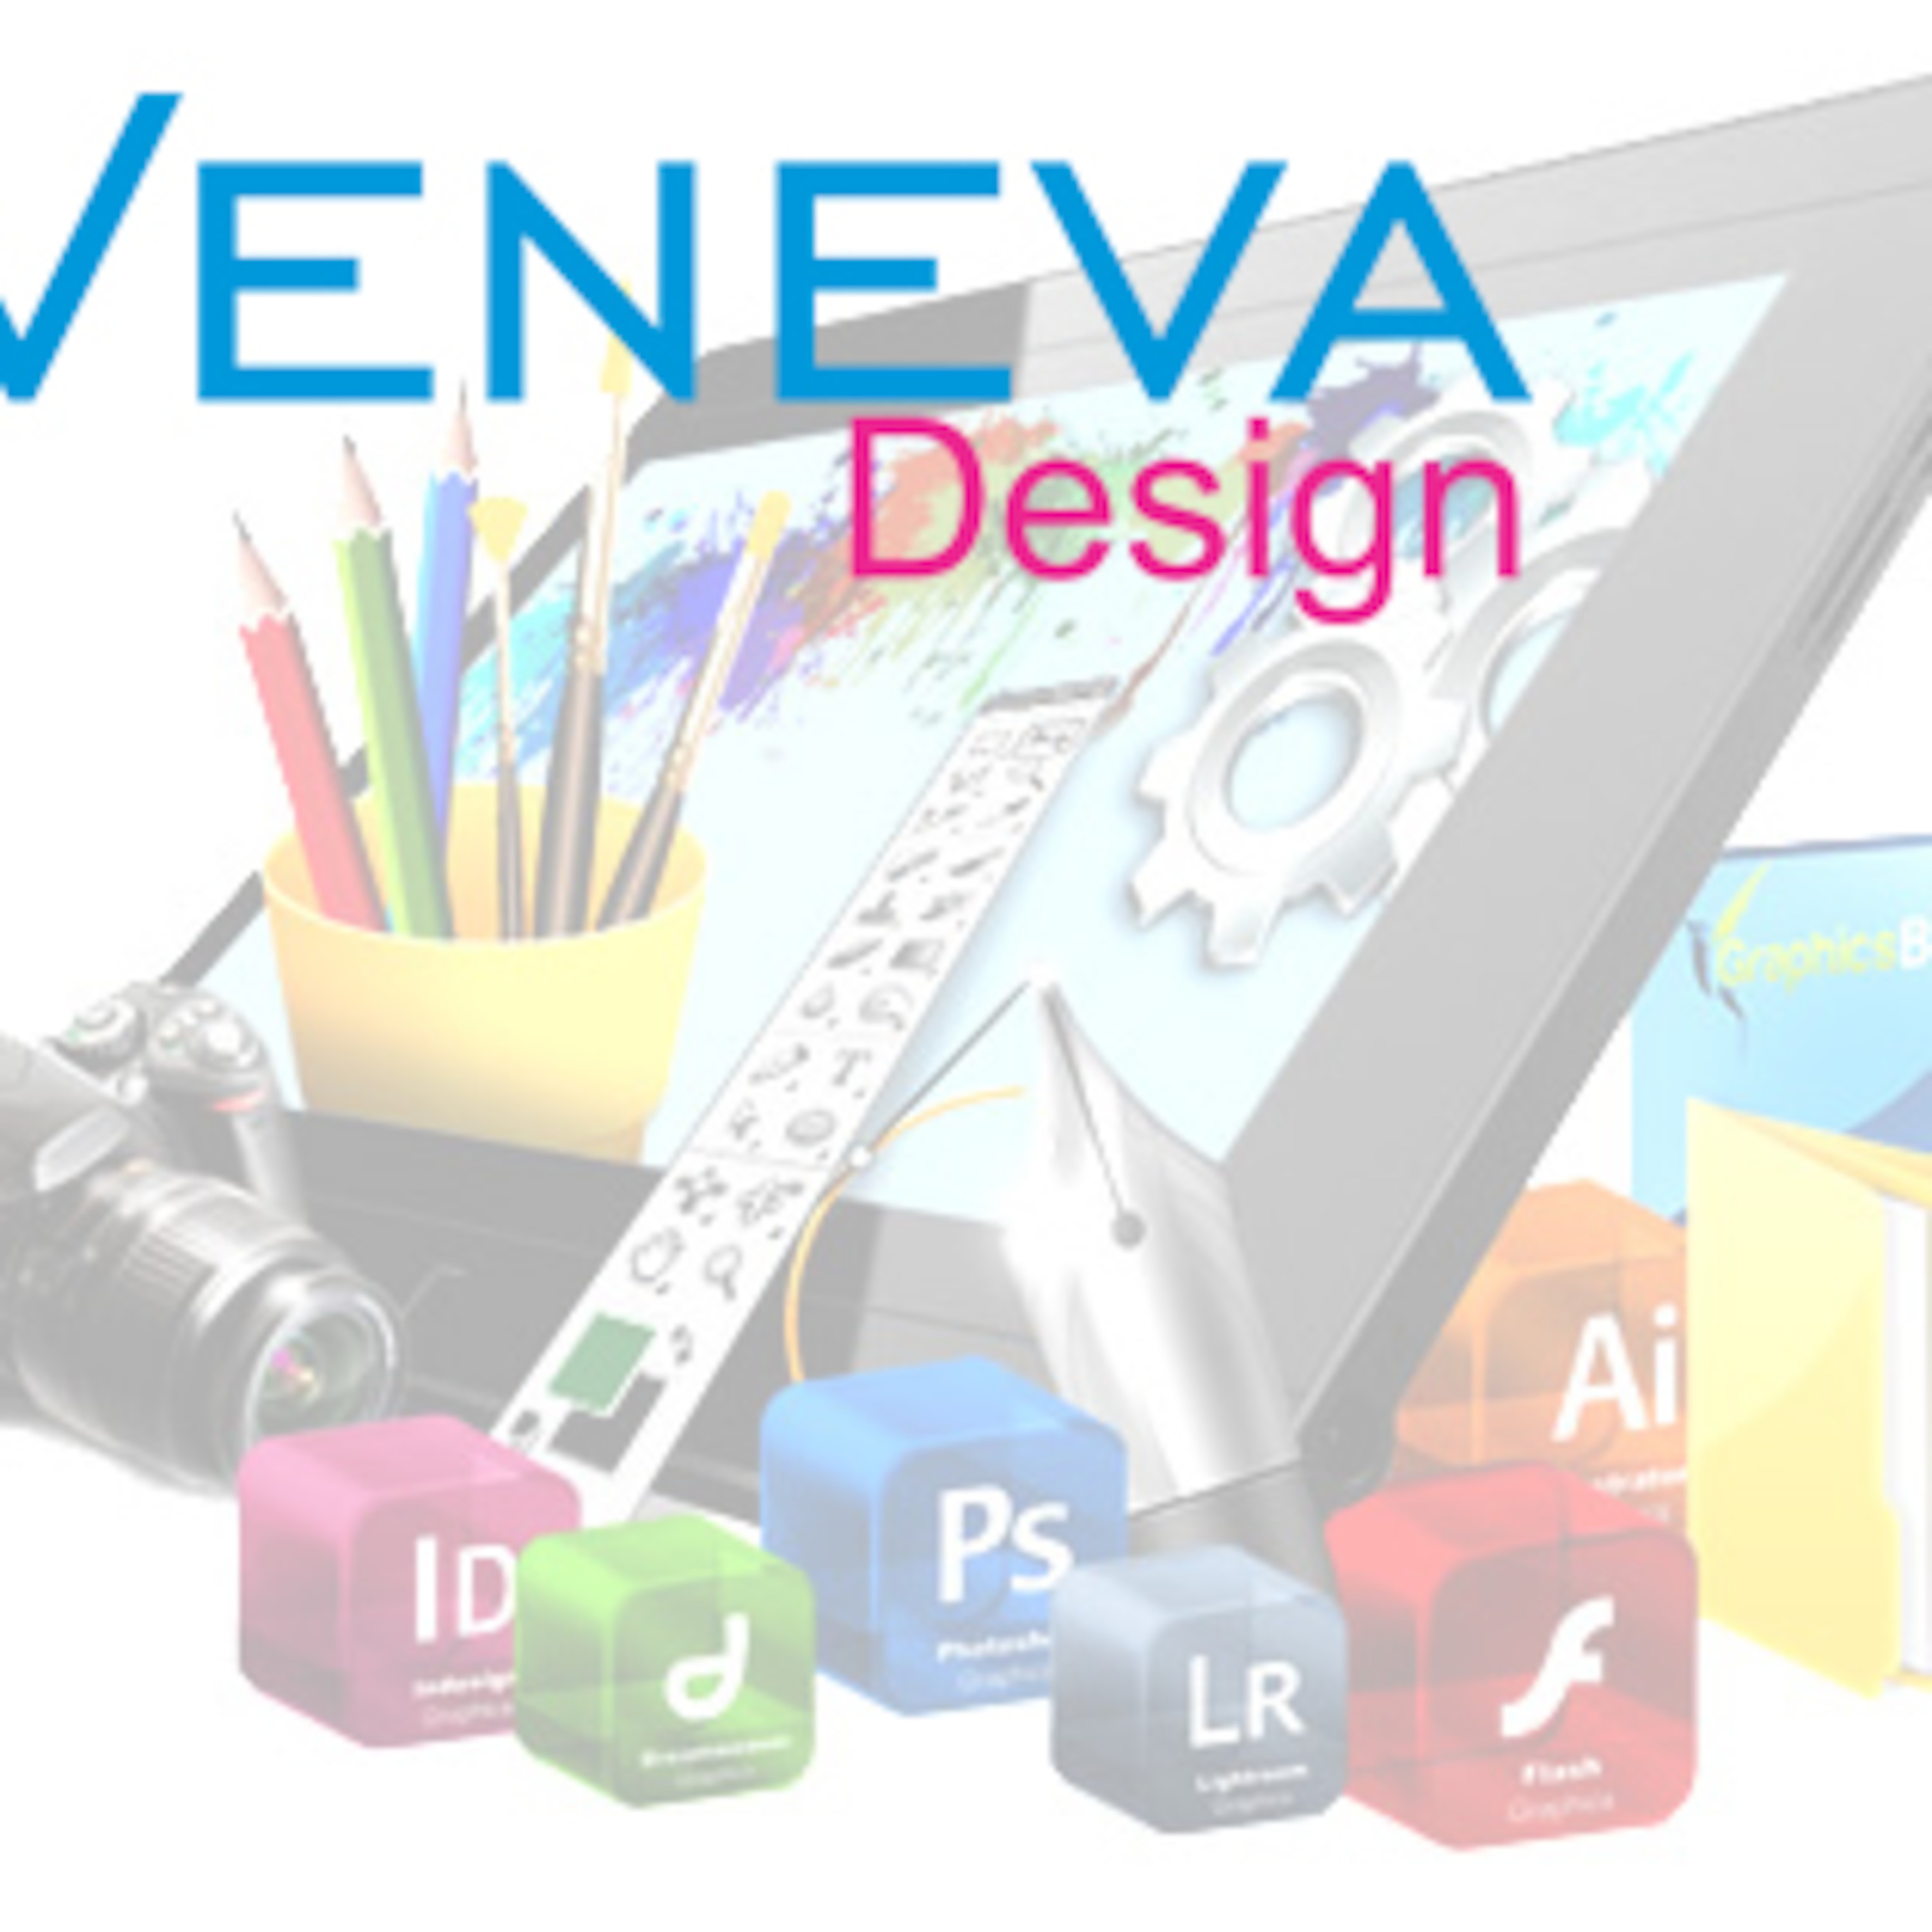 Veneva Design's